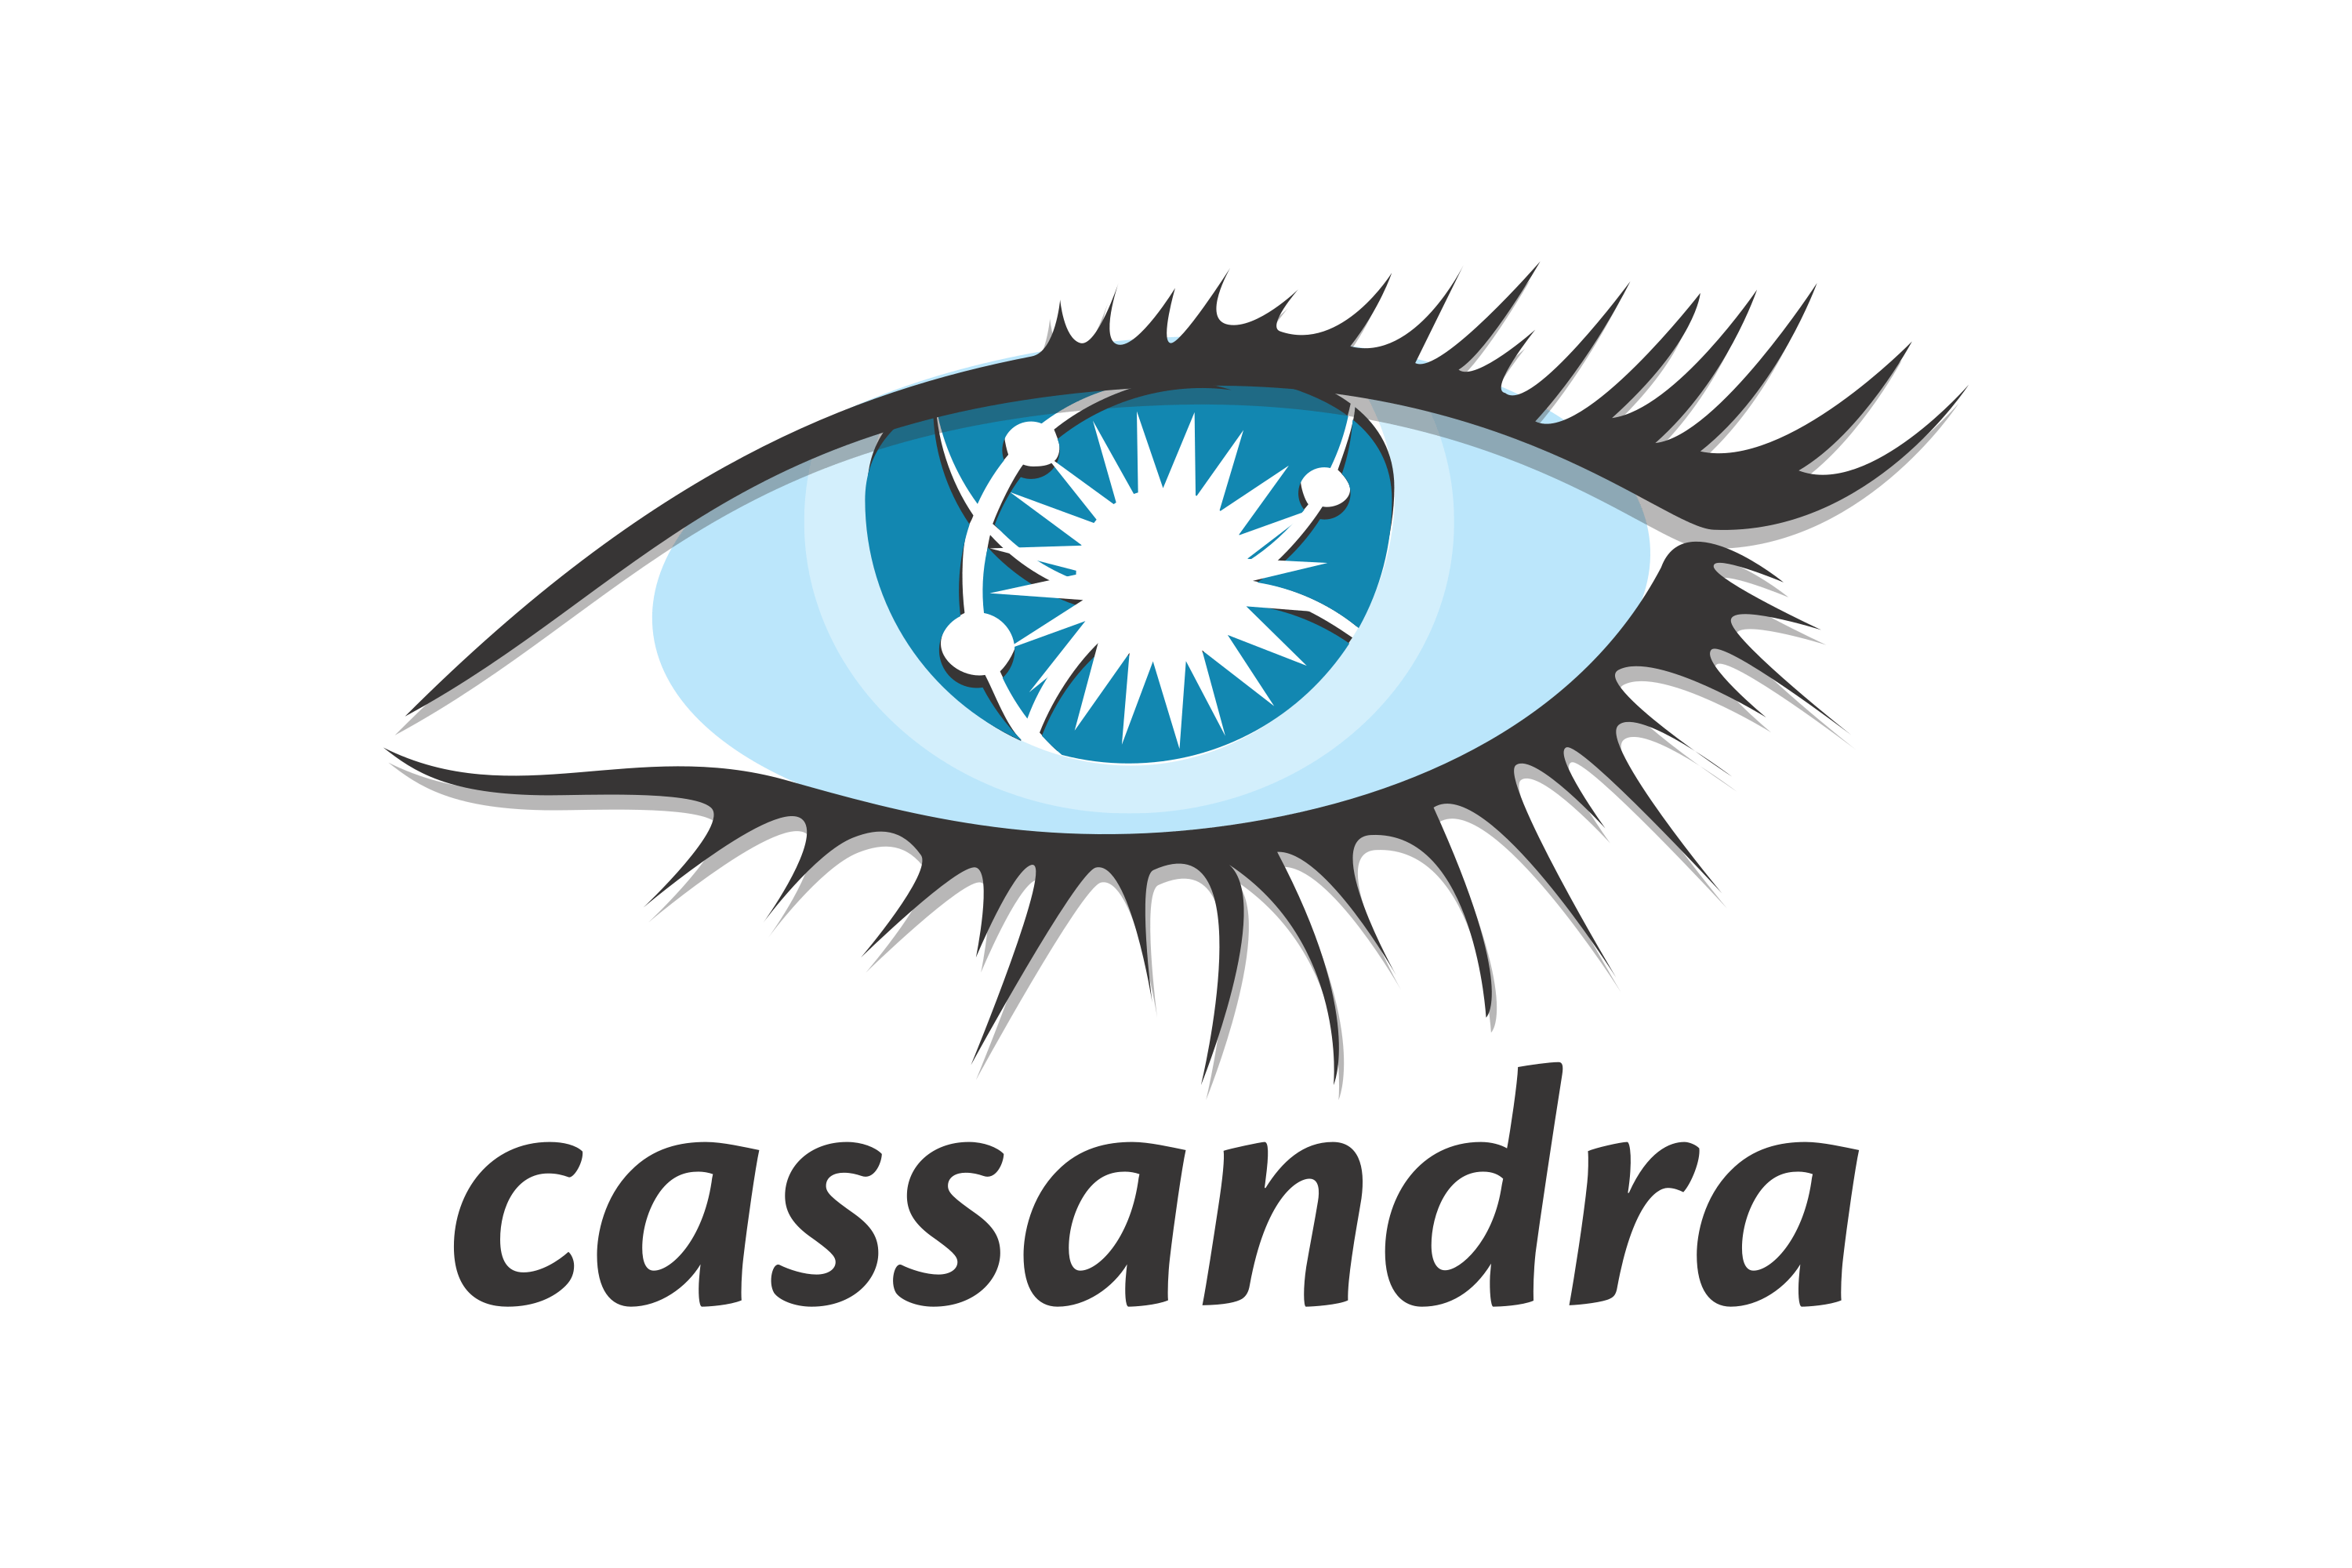 Cassandra - shell commands